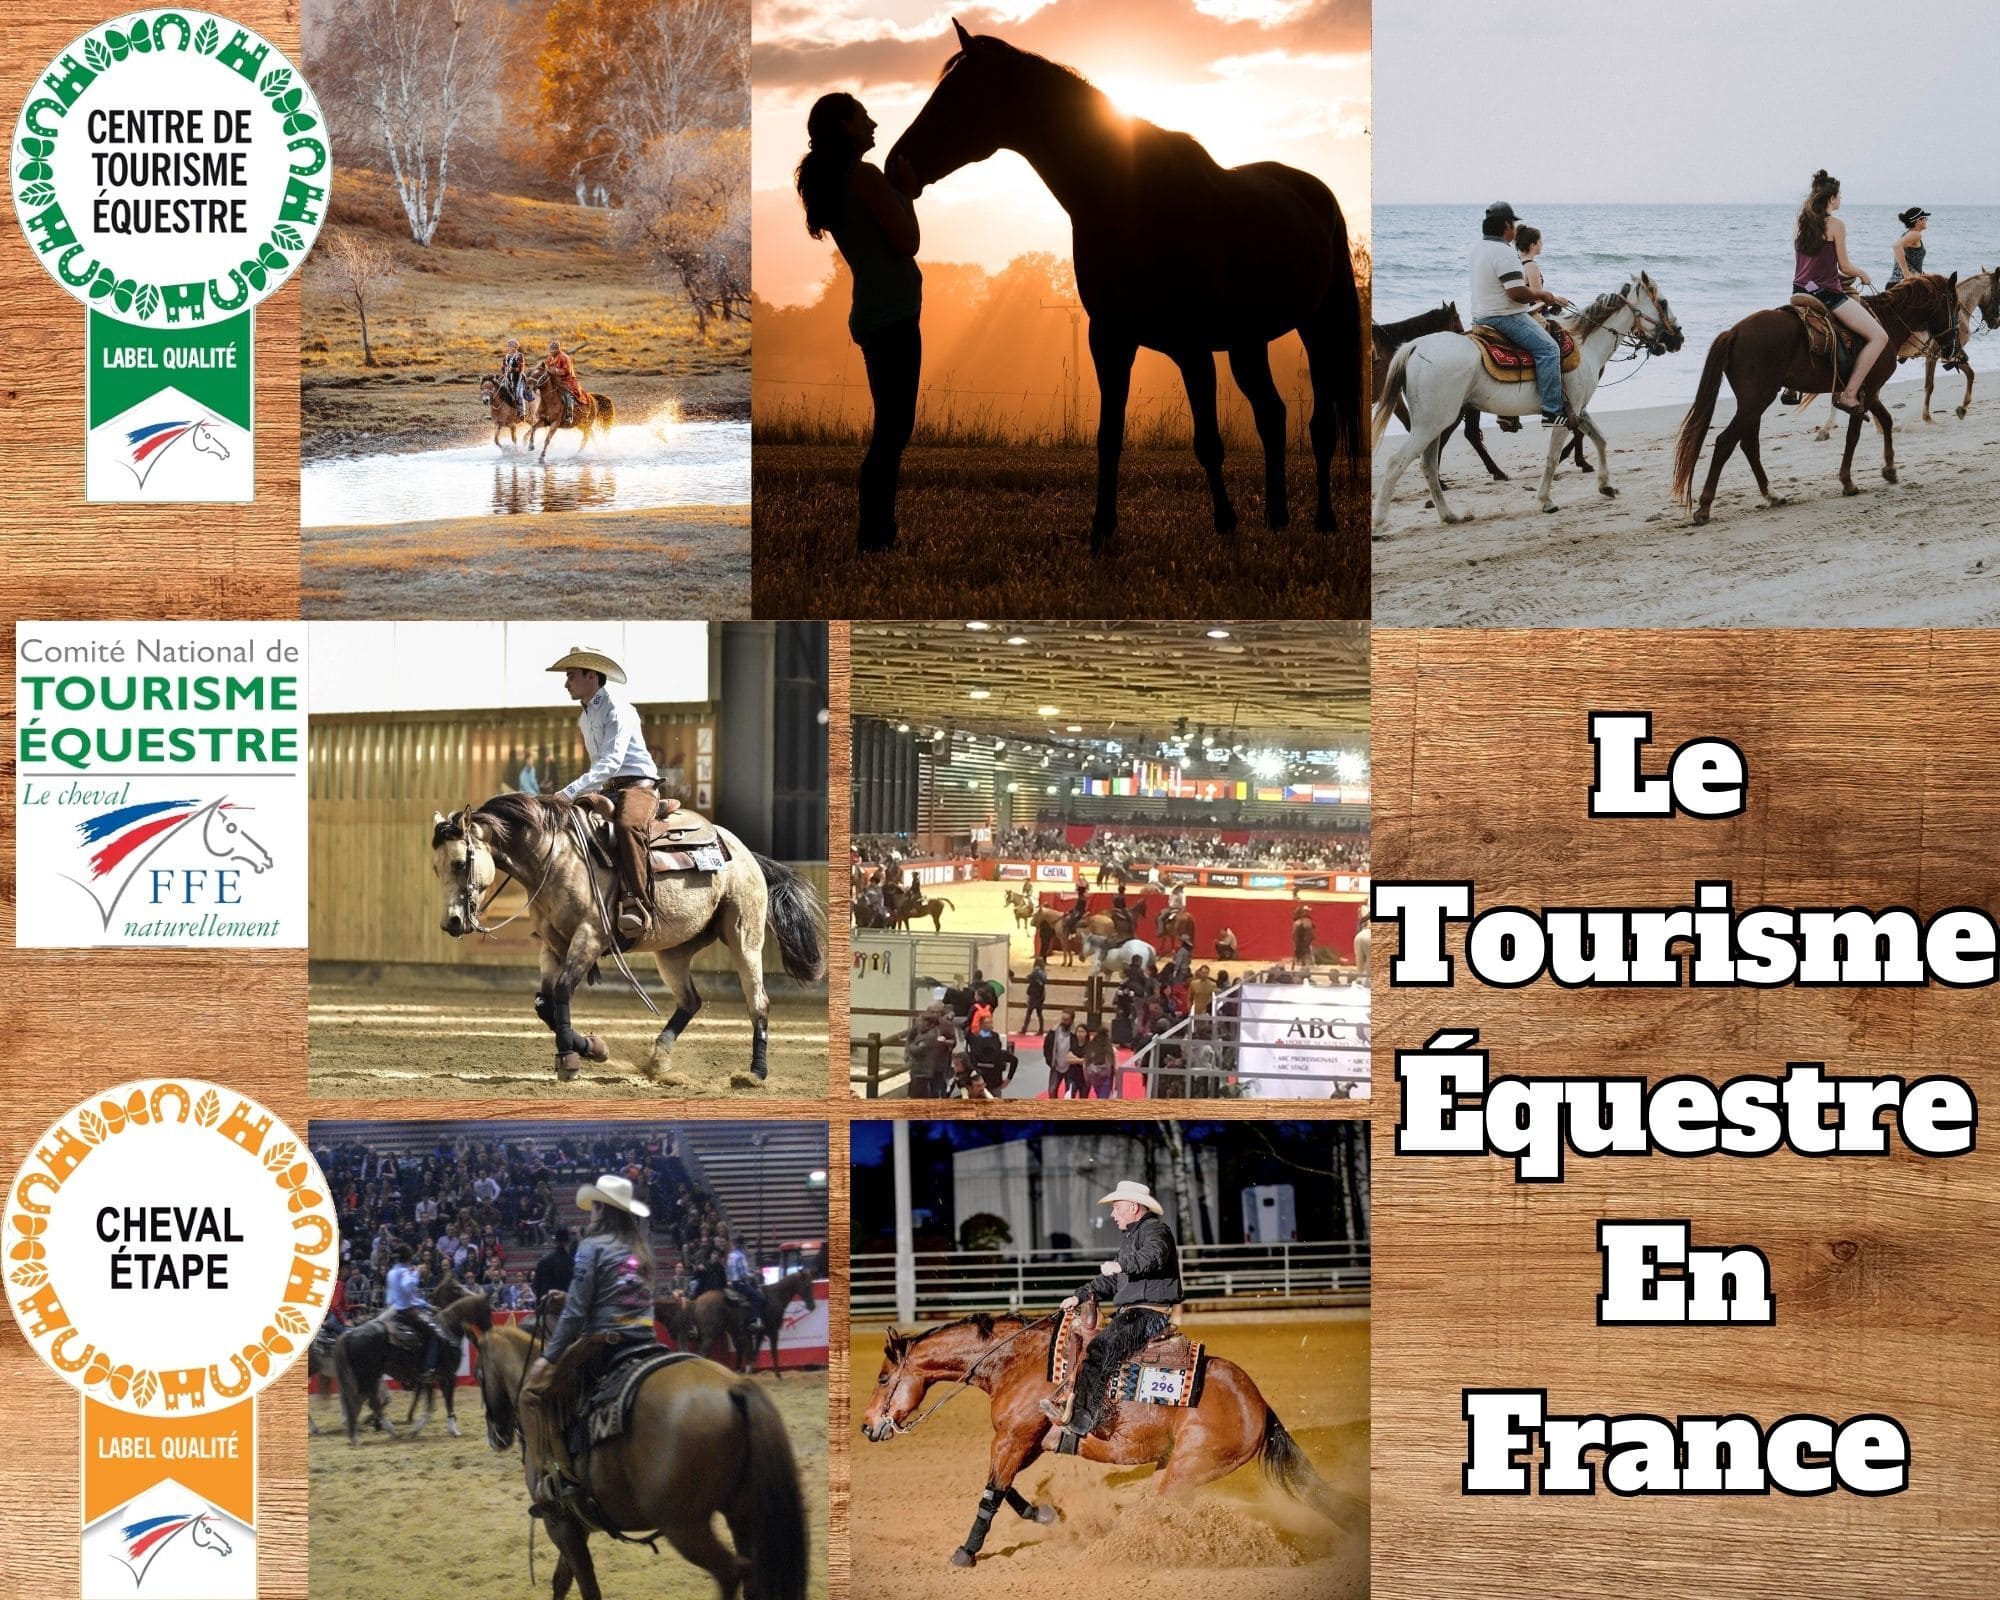 Le tourisme Equestre